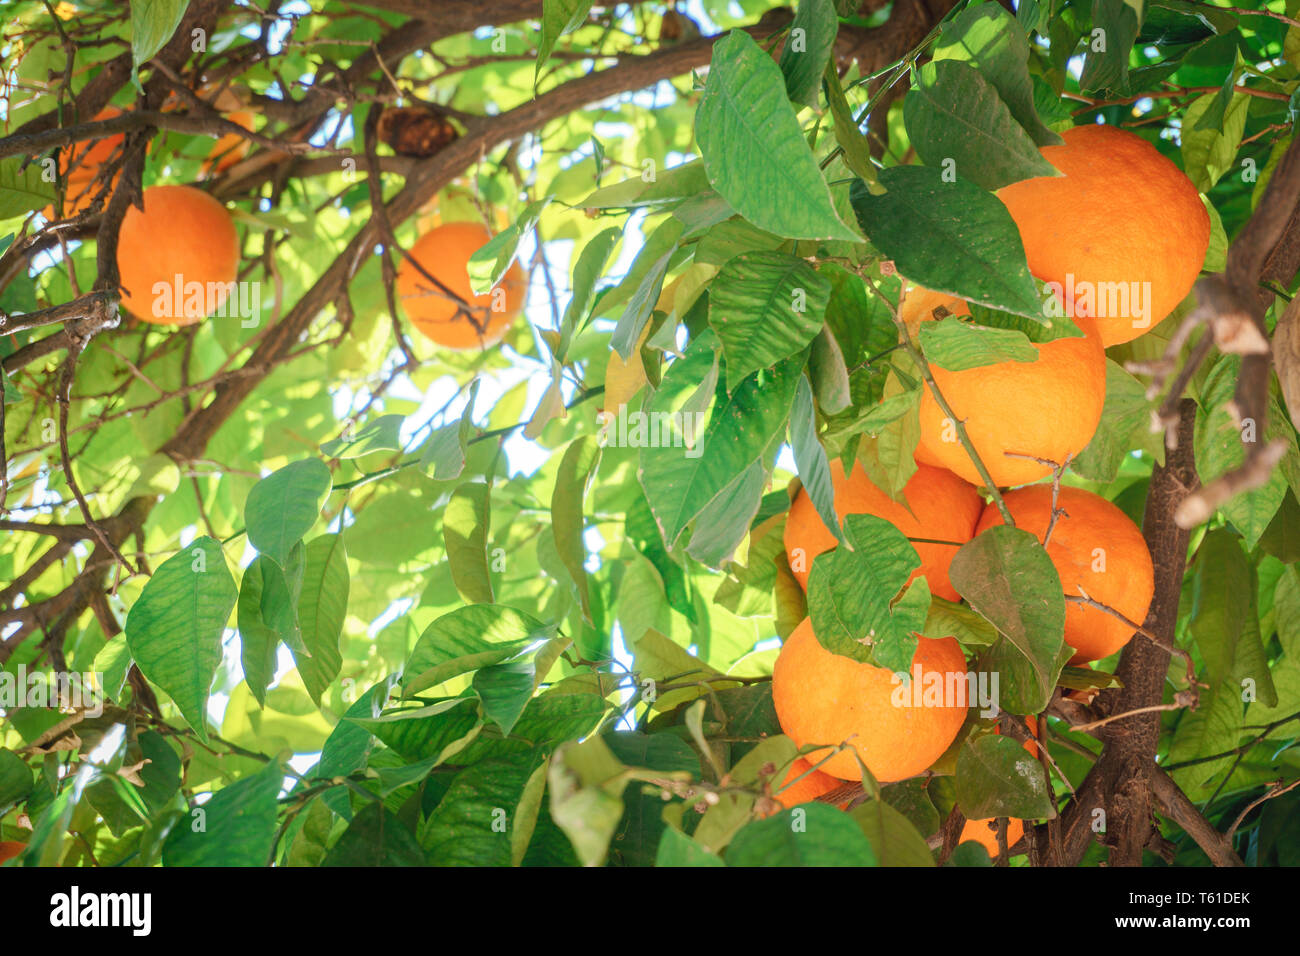 Mehrere Orangen Früchte hängen am Orangenbaum mit grünen Blättern Marrakesch Marokko / several orange on tree with green leaves Marrakech Morocco Stock Photo